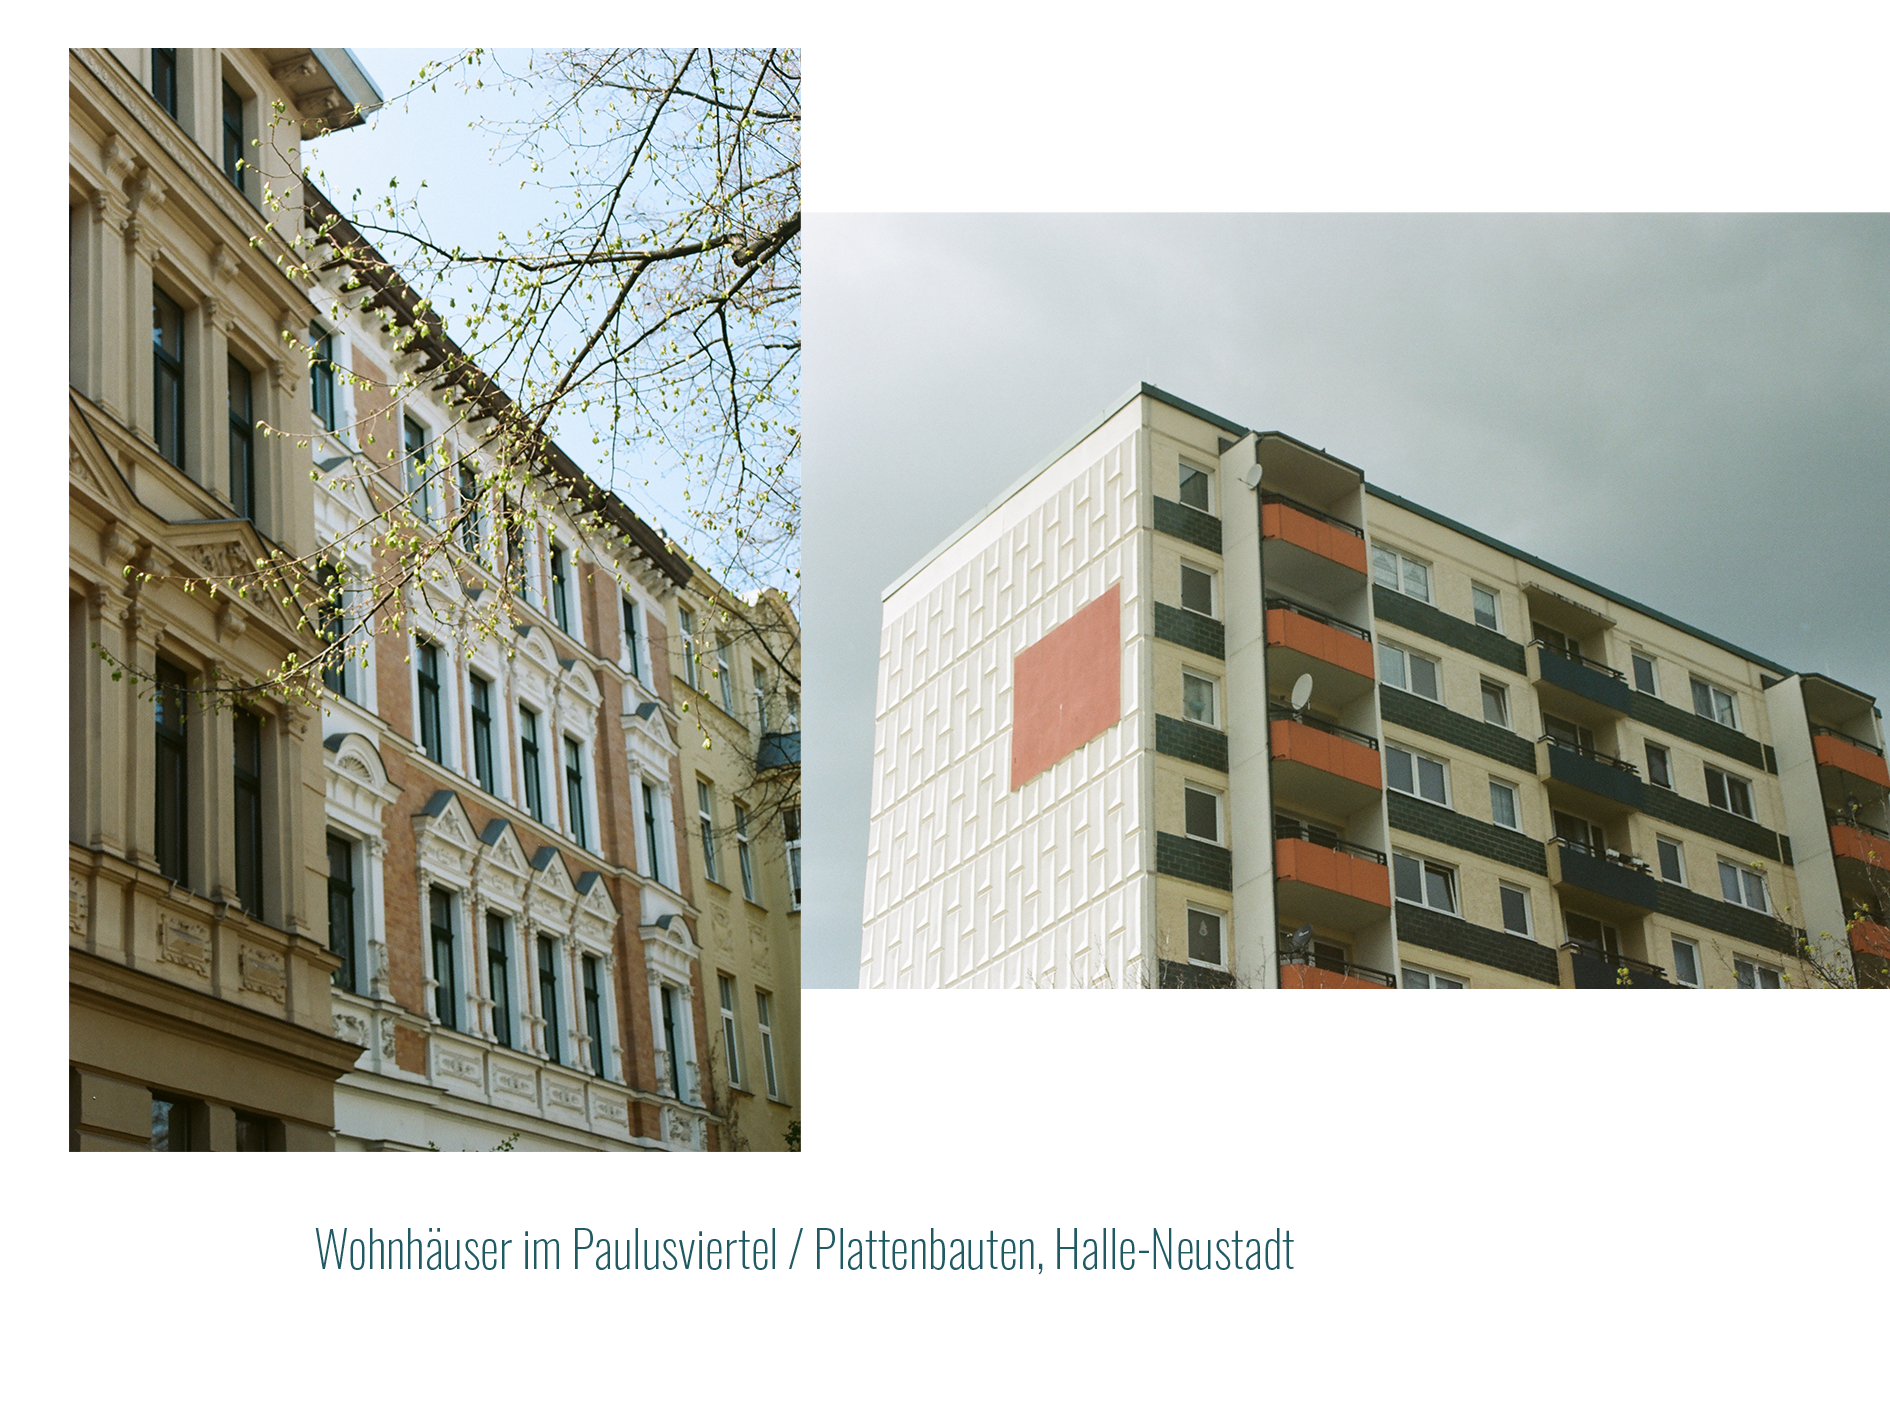 Wohnhäuser Paulusviertel: Sanierte Altbaufasaden. In Kontrast zu Plattenbauten, Halle-Neustadt: 
              in Rot- und Blautönen gestaltetem Plattenbau mit Balkonen.